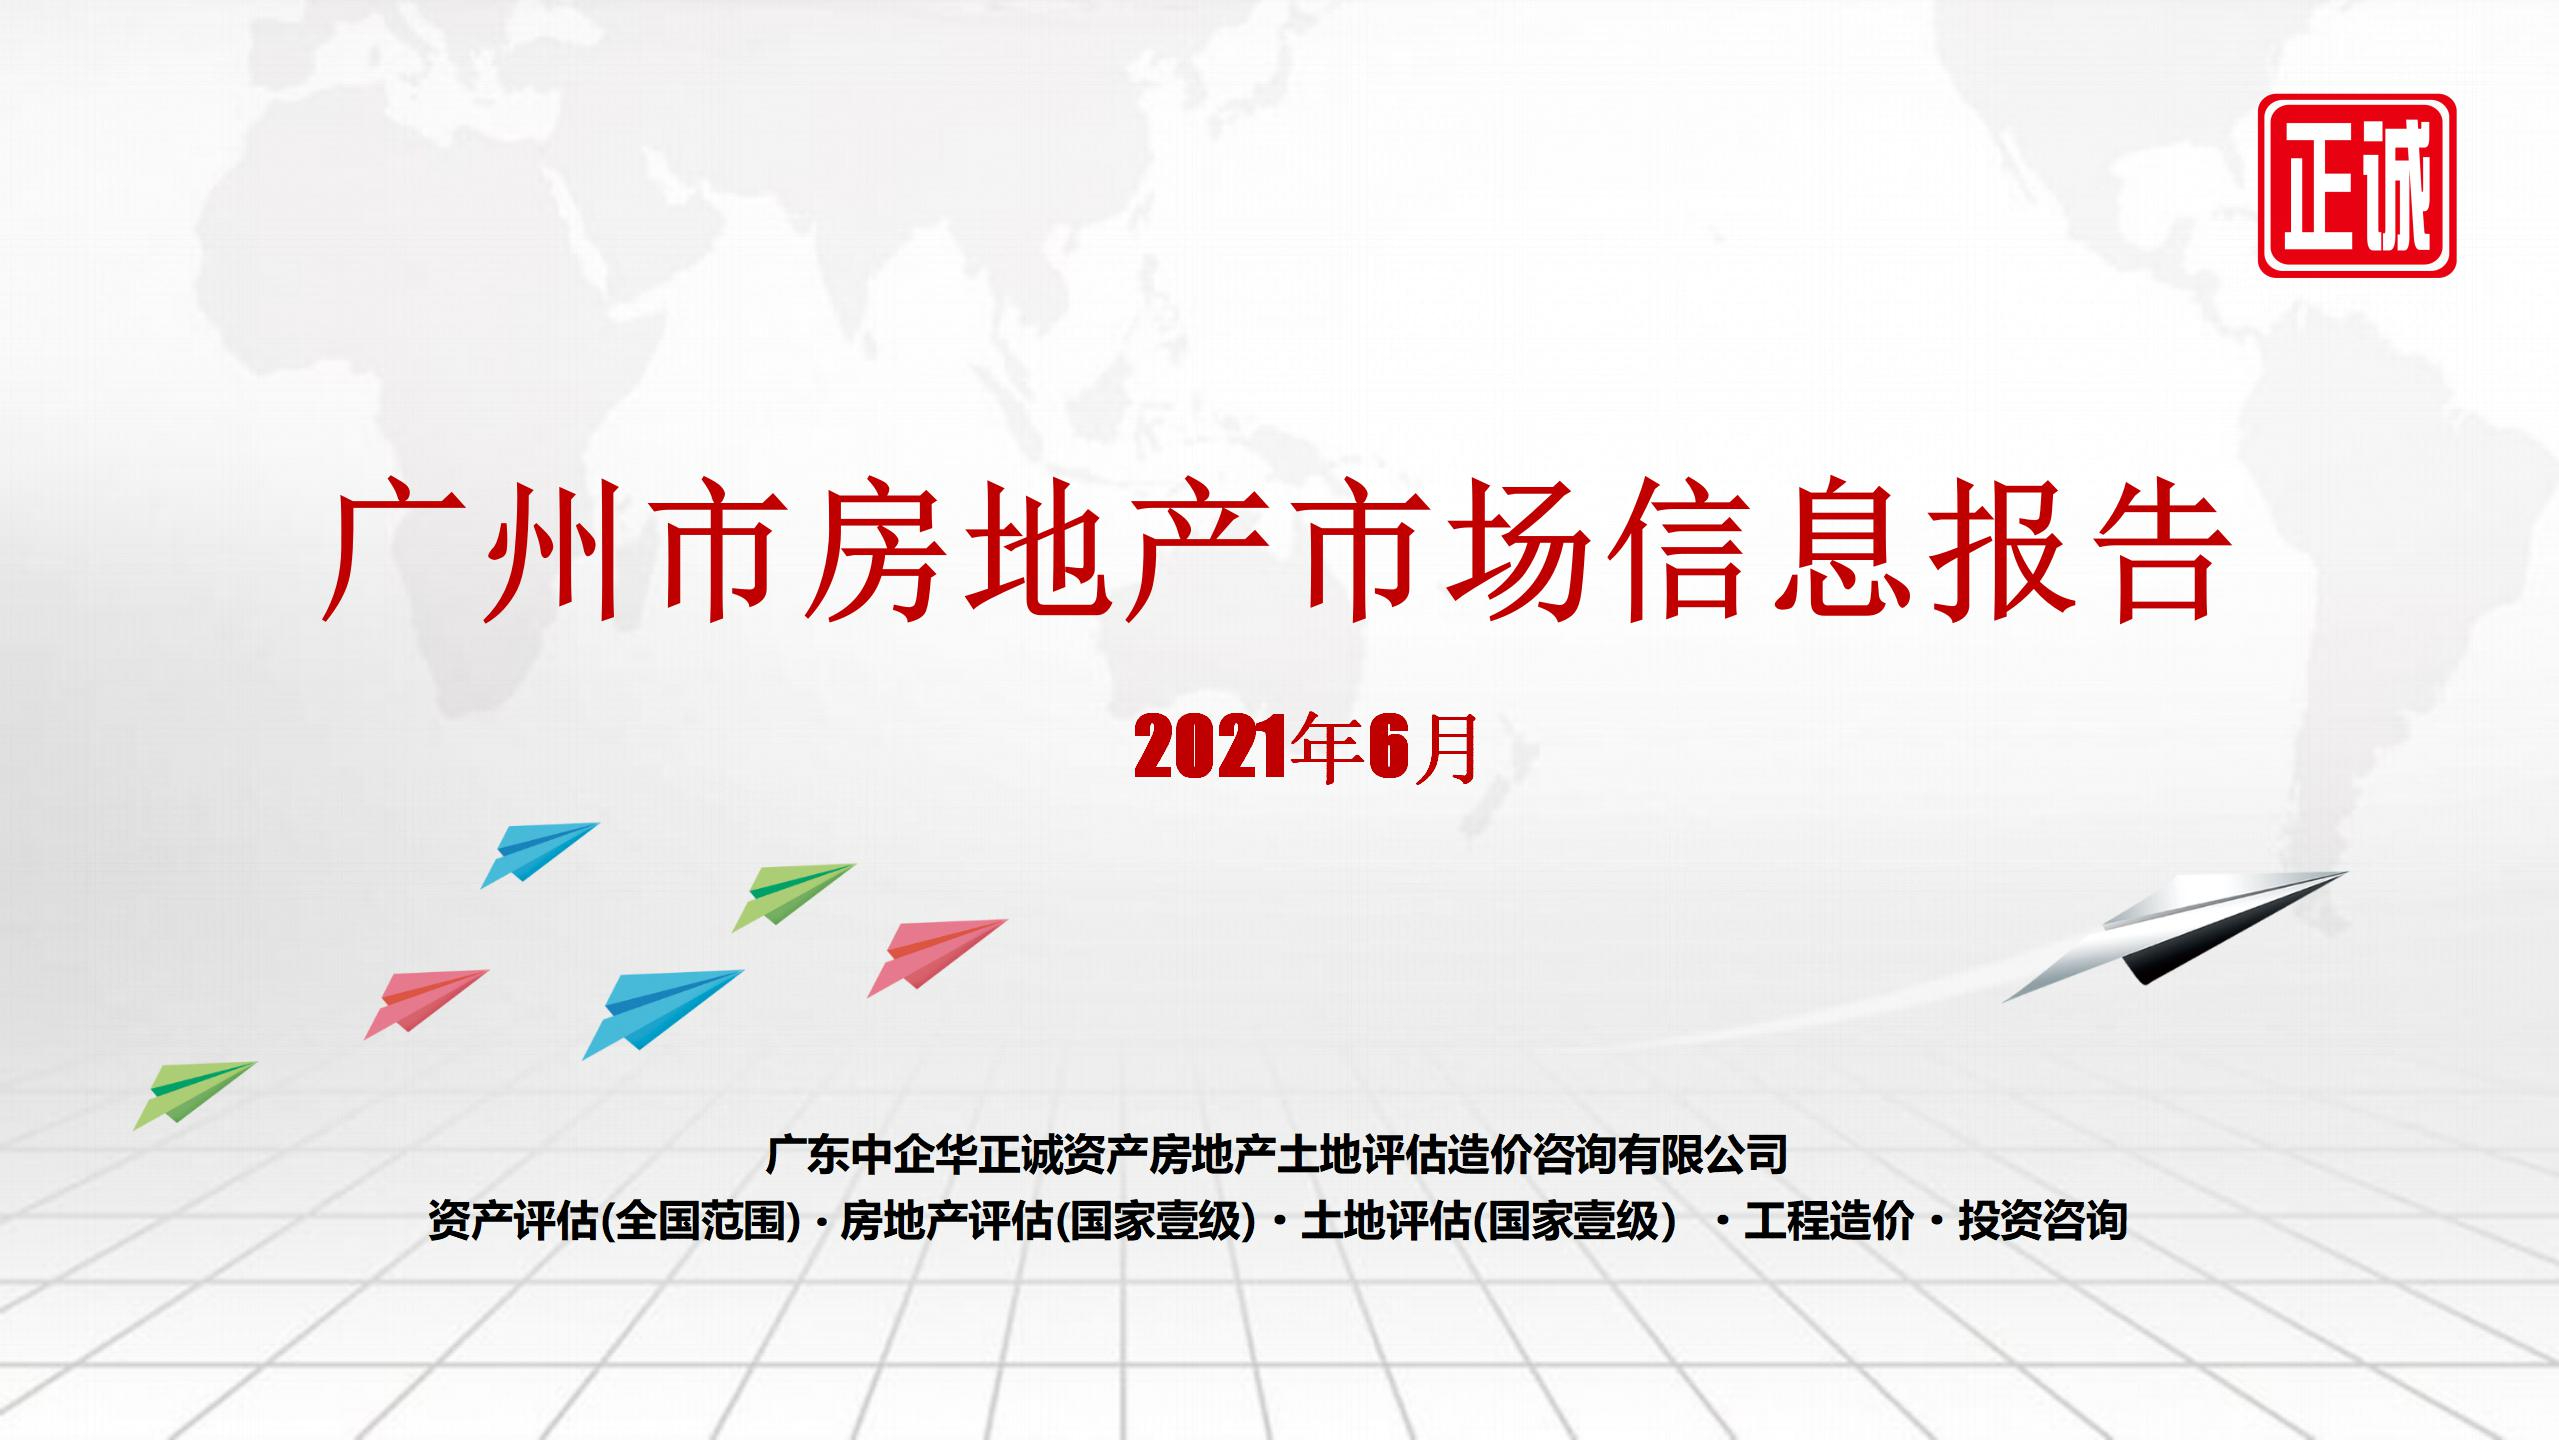 2021年6月广州市房地产市场信息报告